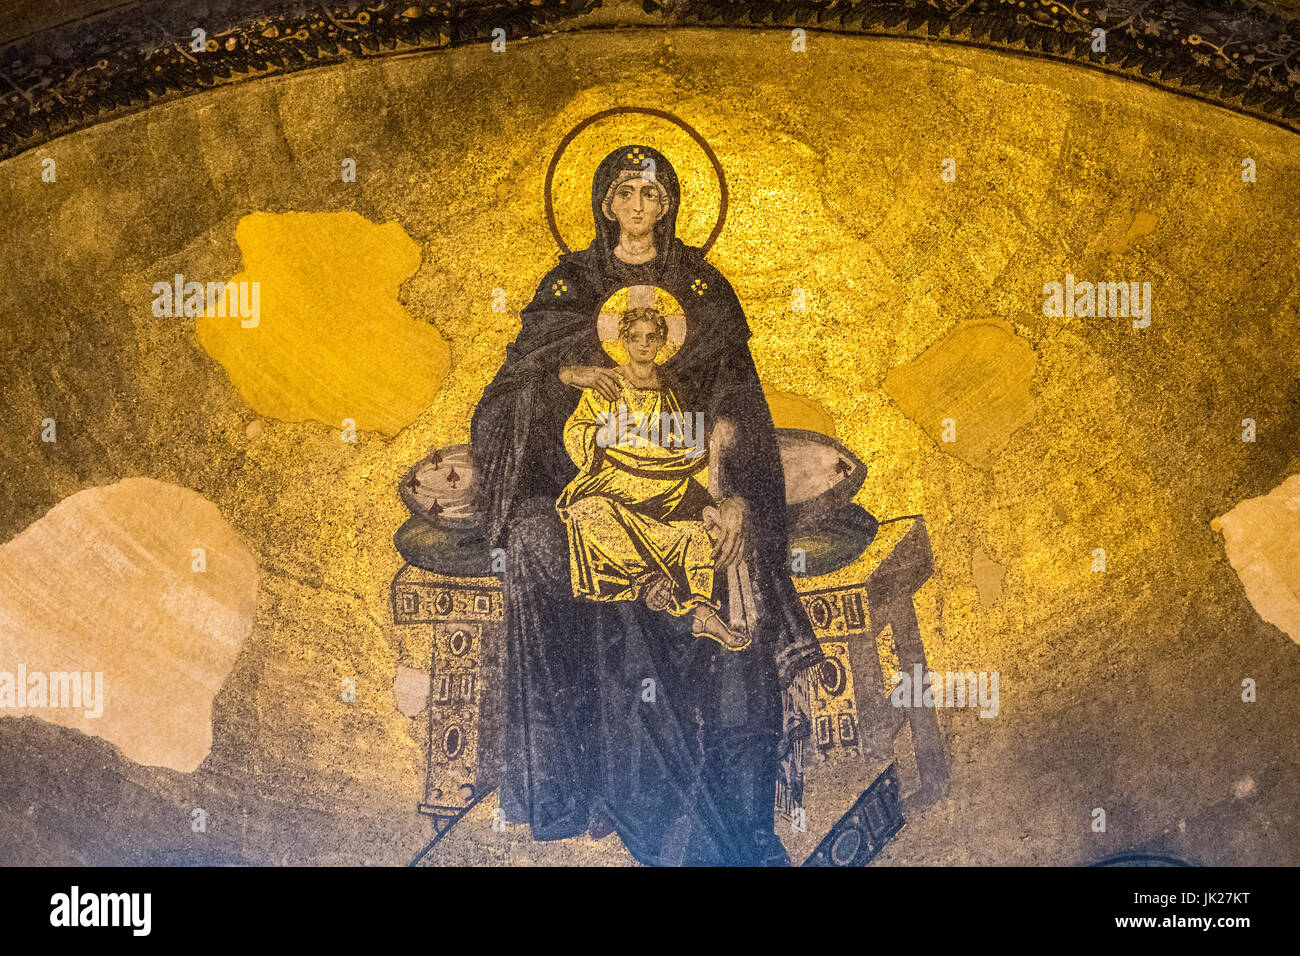 Mosaïque de l'Abside de la Vierge Marie et le Christ enfant dans la basilique Sainte-Sophie, située à Istanbul, Turquie. Banque D'Images